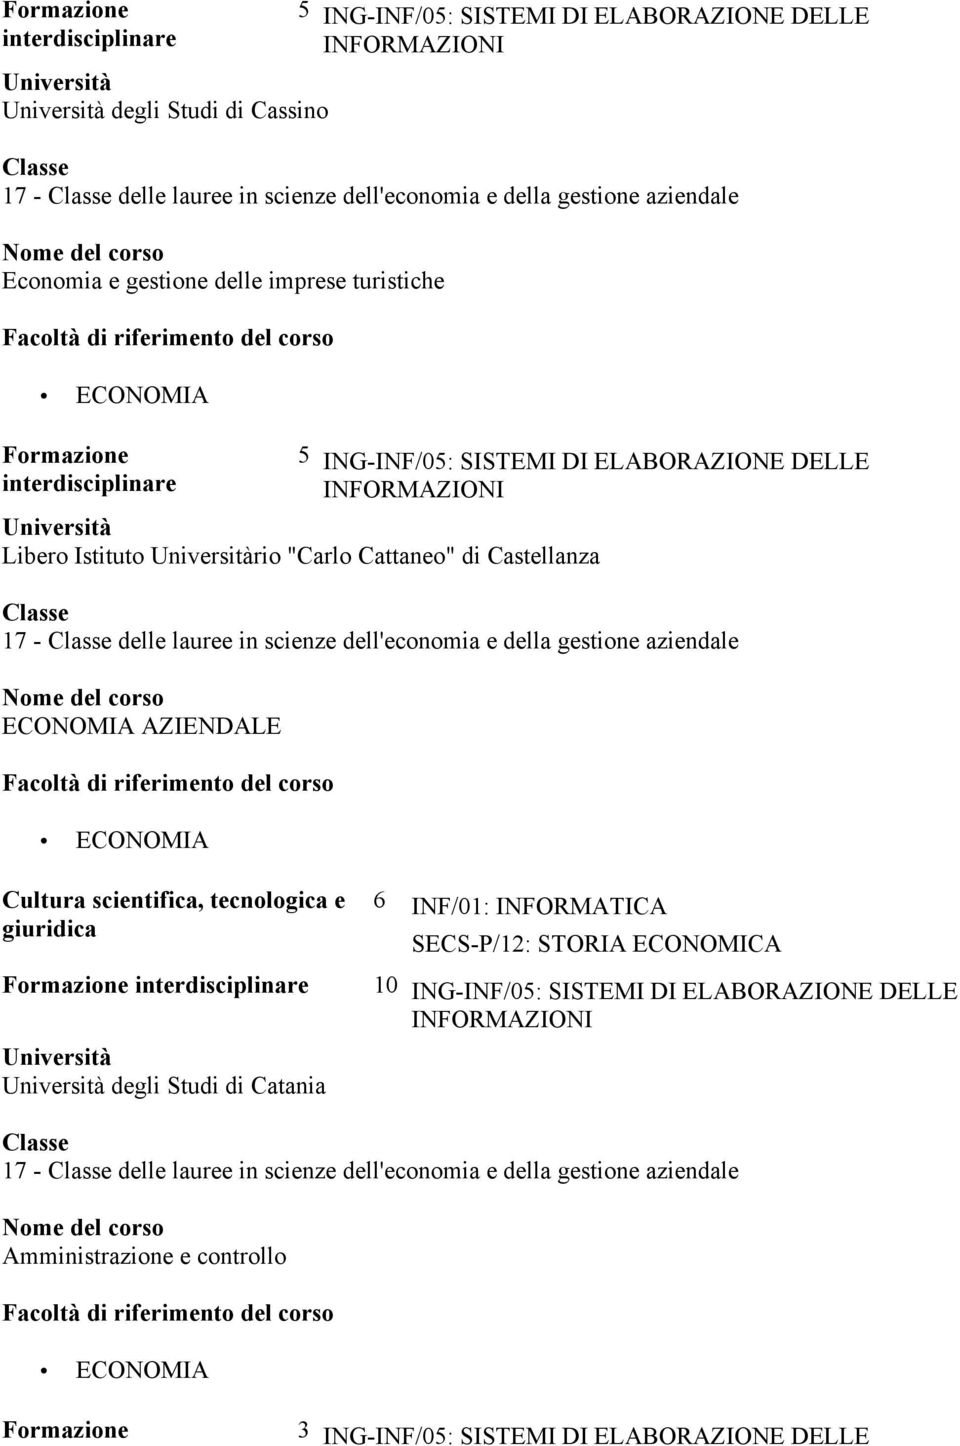 Cultura scientifica, tecnologica e giuridica degli Studi di Catania 6 INF/01: INFORMATICA SECS-P/12: STORIA